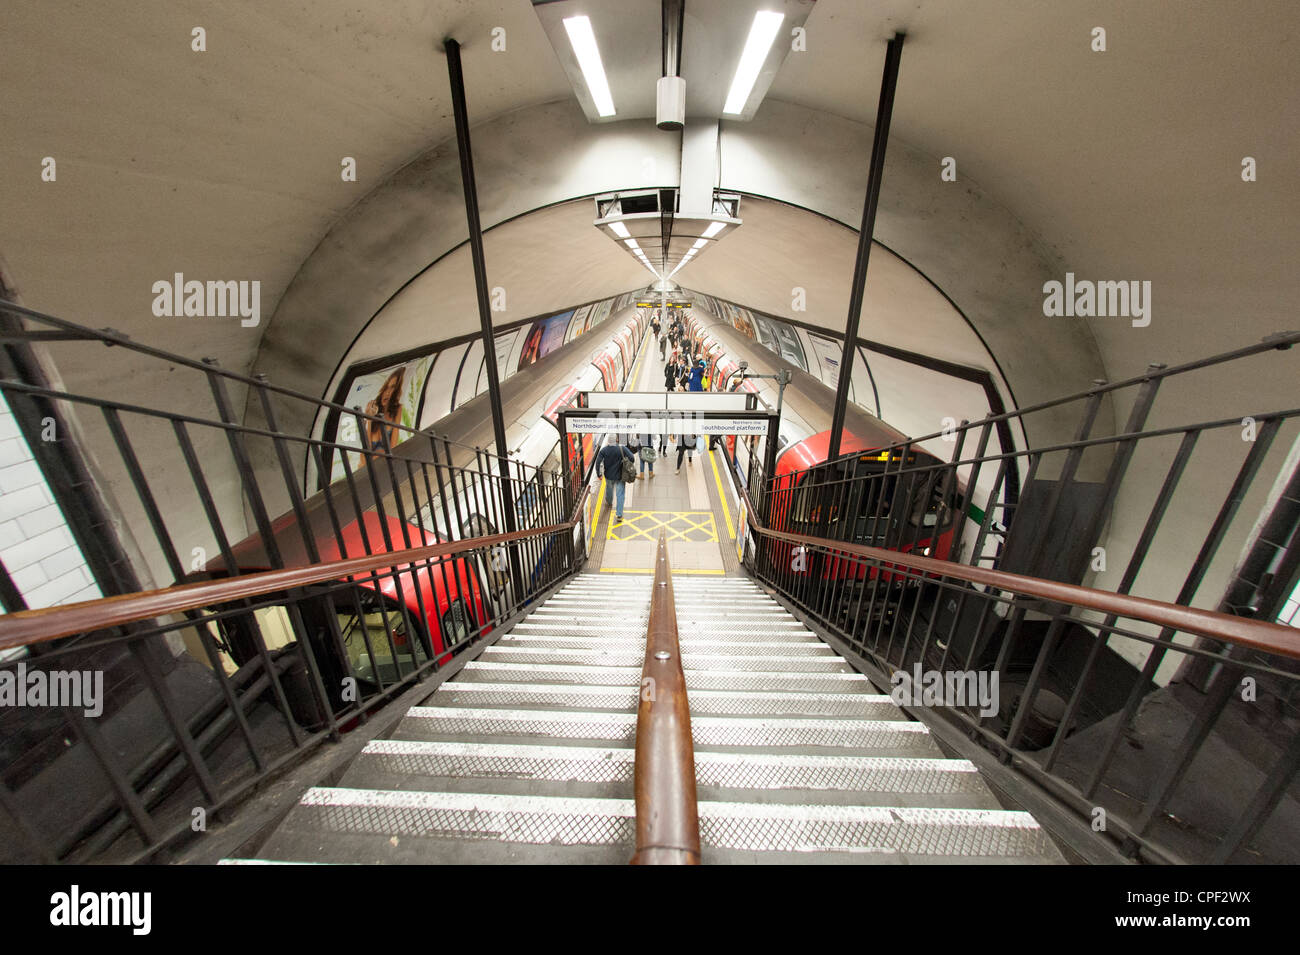 Clapham Common underground station, London, England, UK Stock Photo